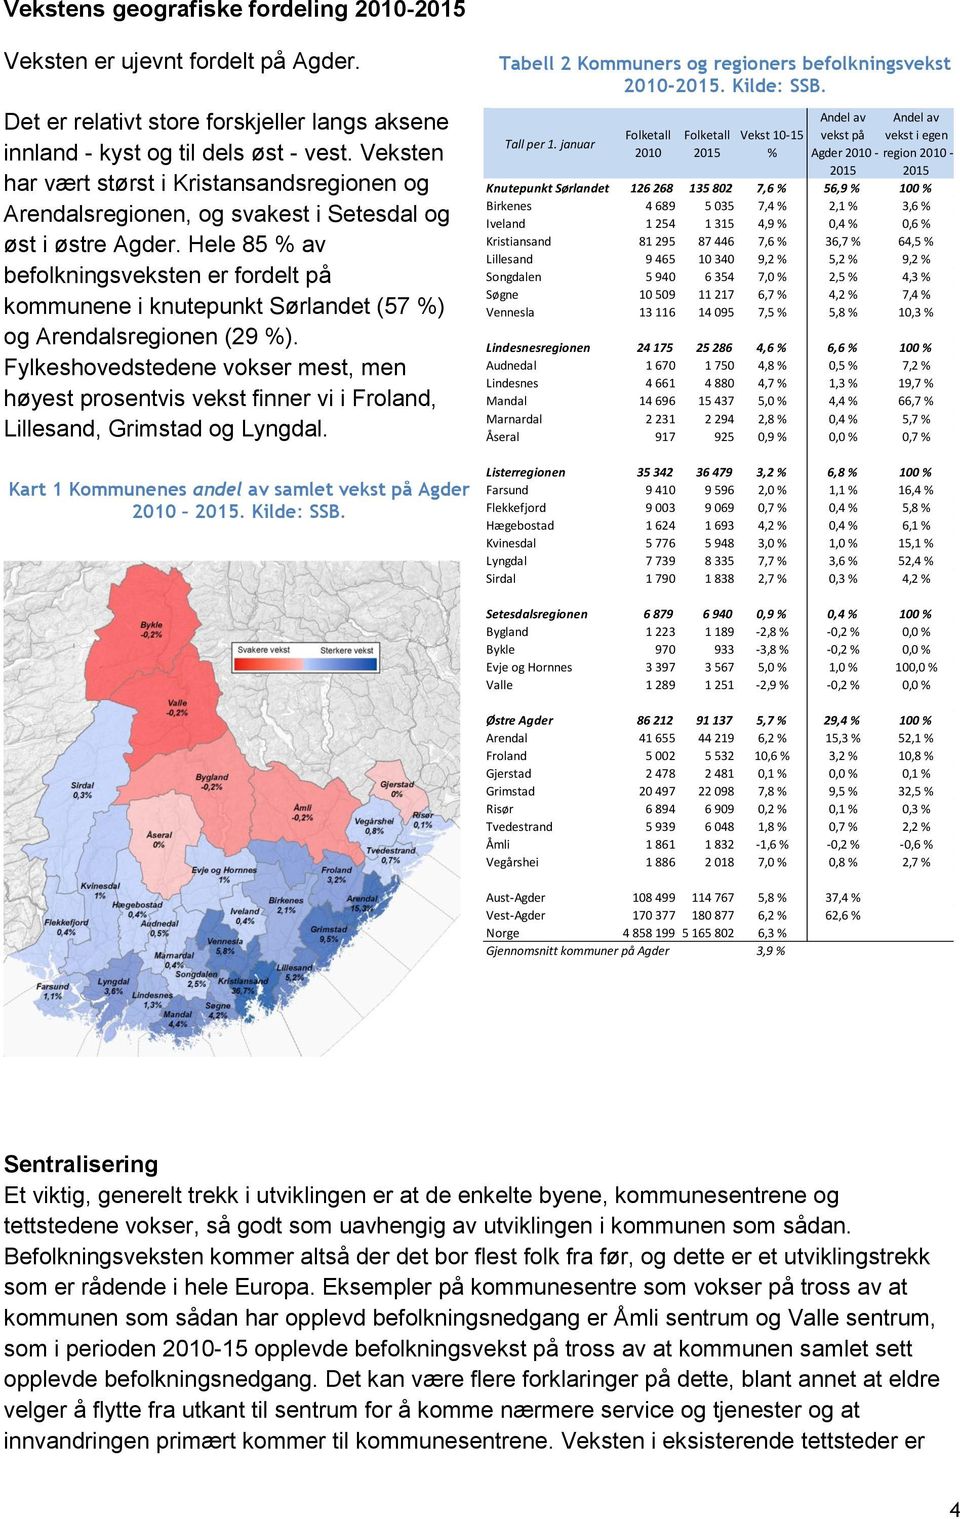 Hele 85 % av befolkningsveksten er fordelt på kommunene i knutepunkt Sørlandet (57 %) og Arendalsregionen (29 %).